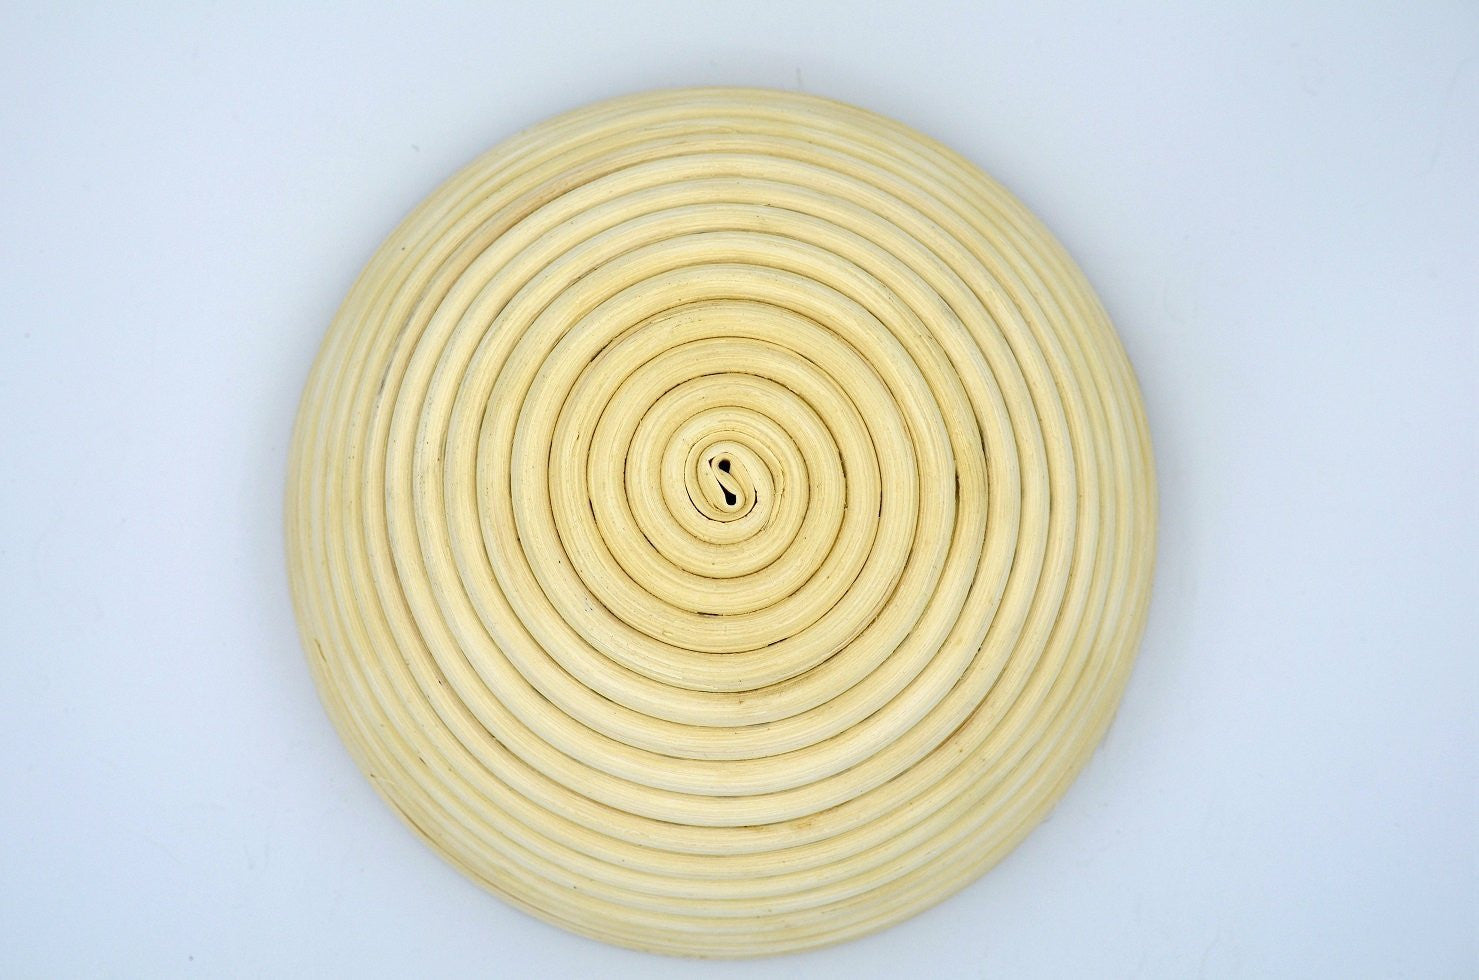 Banneton round 20 cm bread dough proofing basket 麵包發酵籐盆